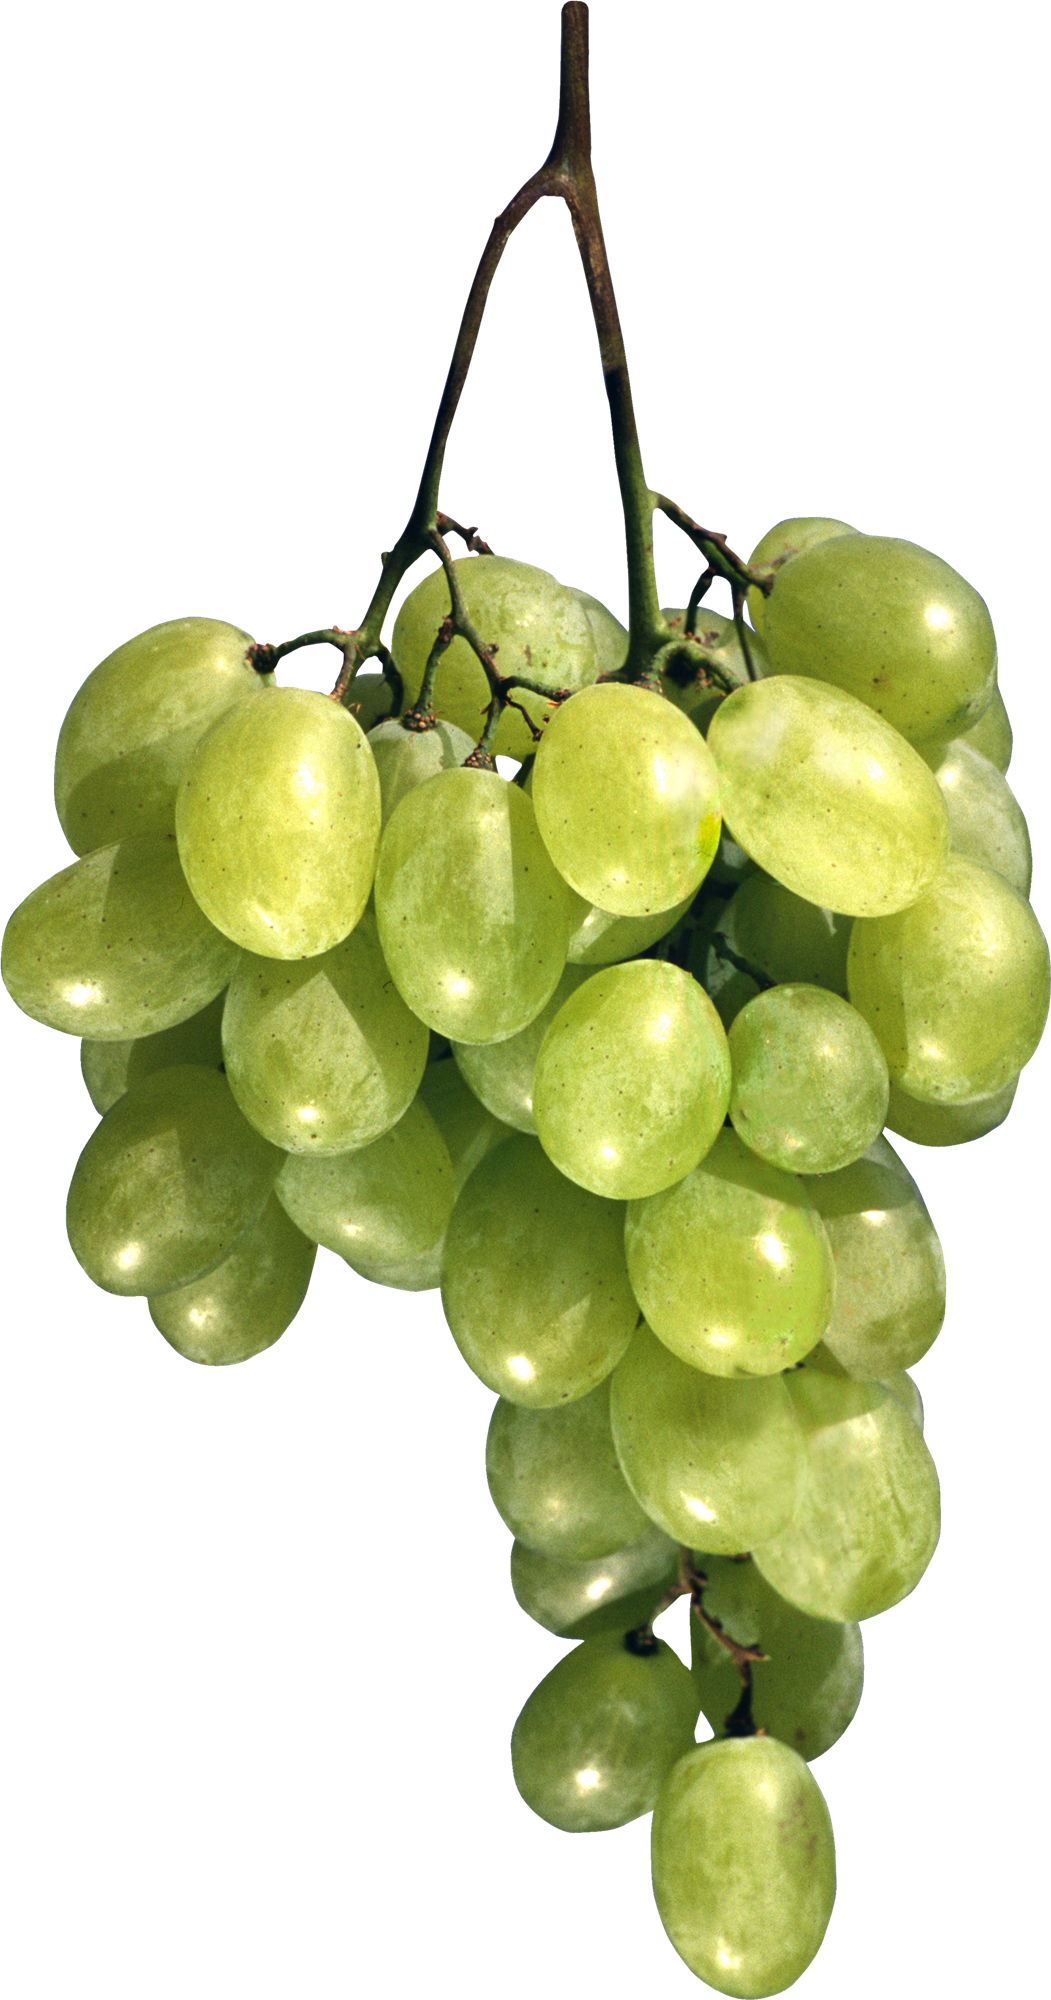 Green Grapes Free Photo PNG Image